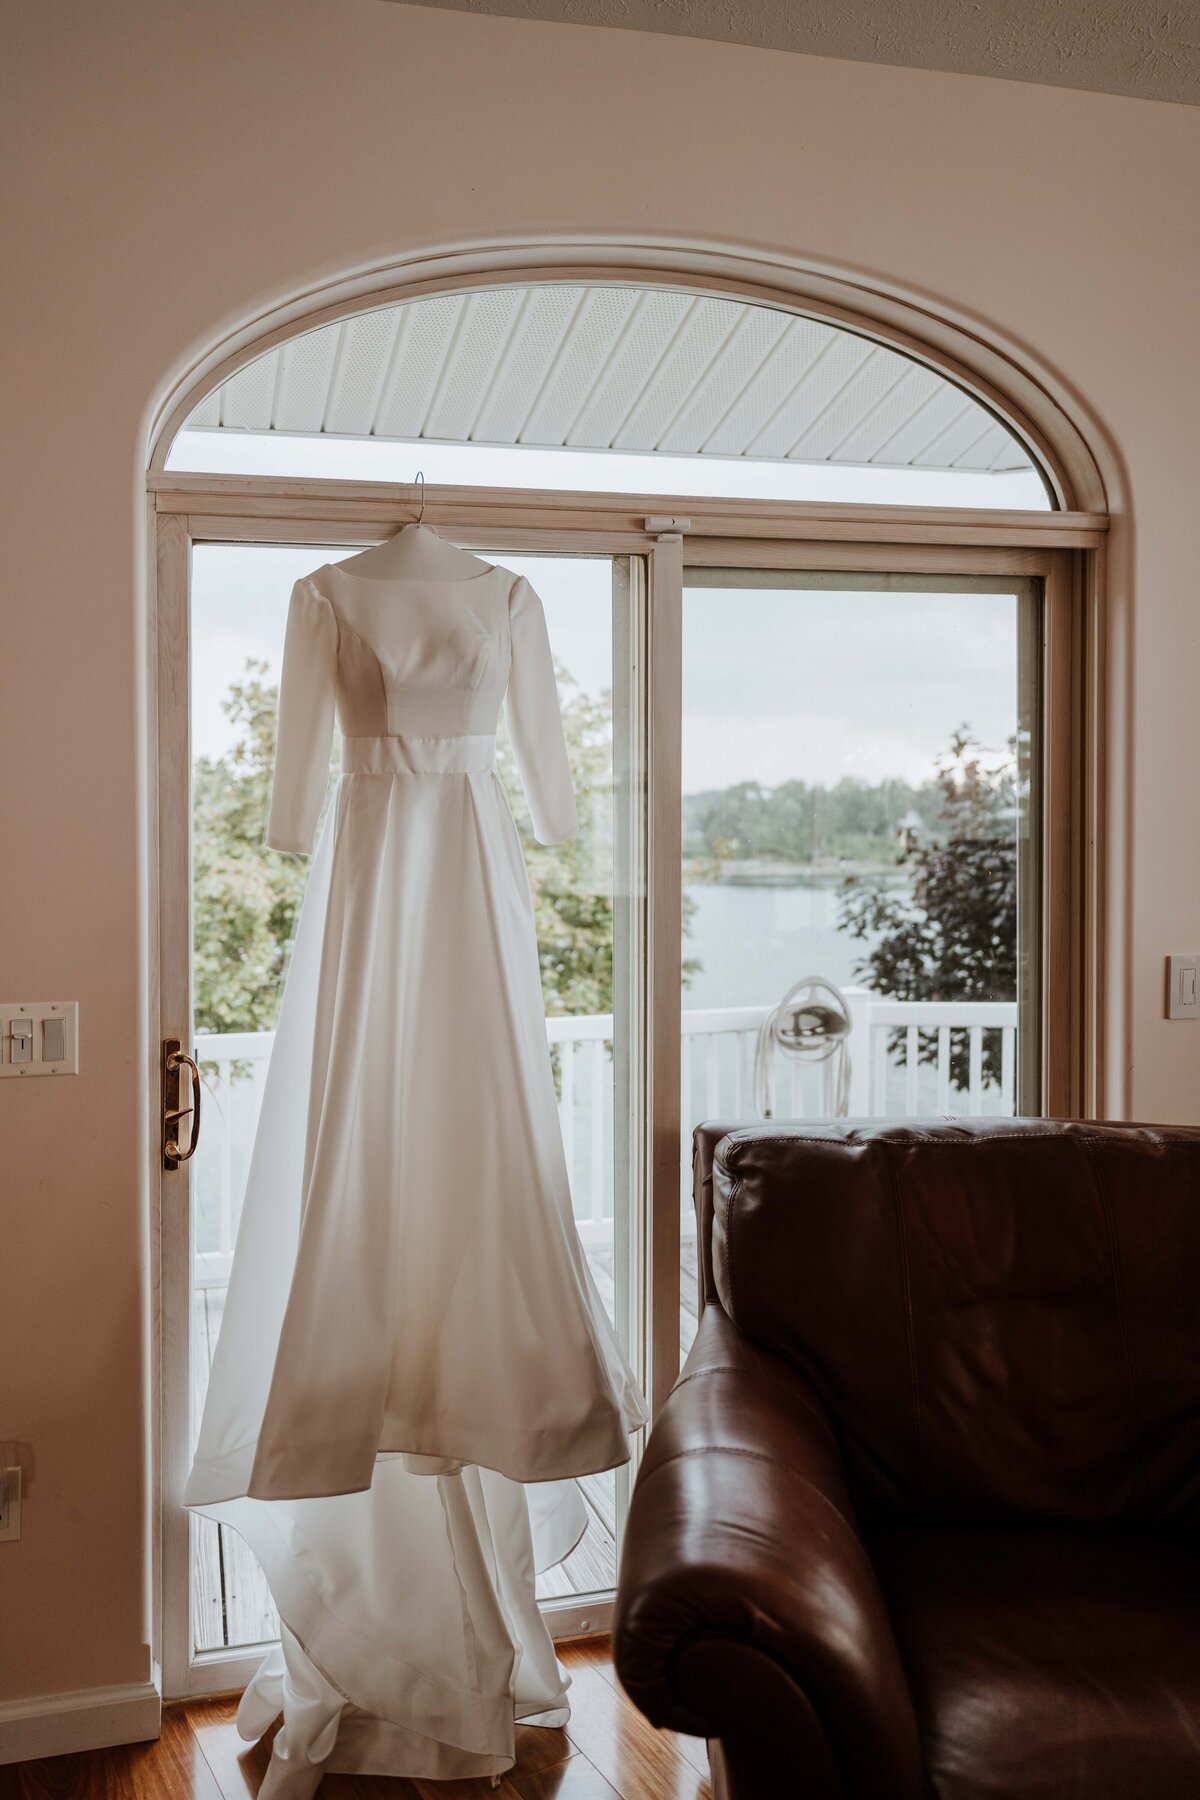 Wedding dress hanging in a glass sliding door.